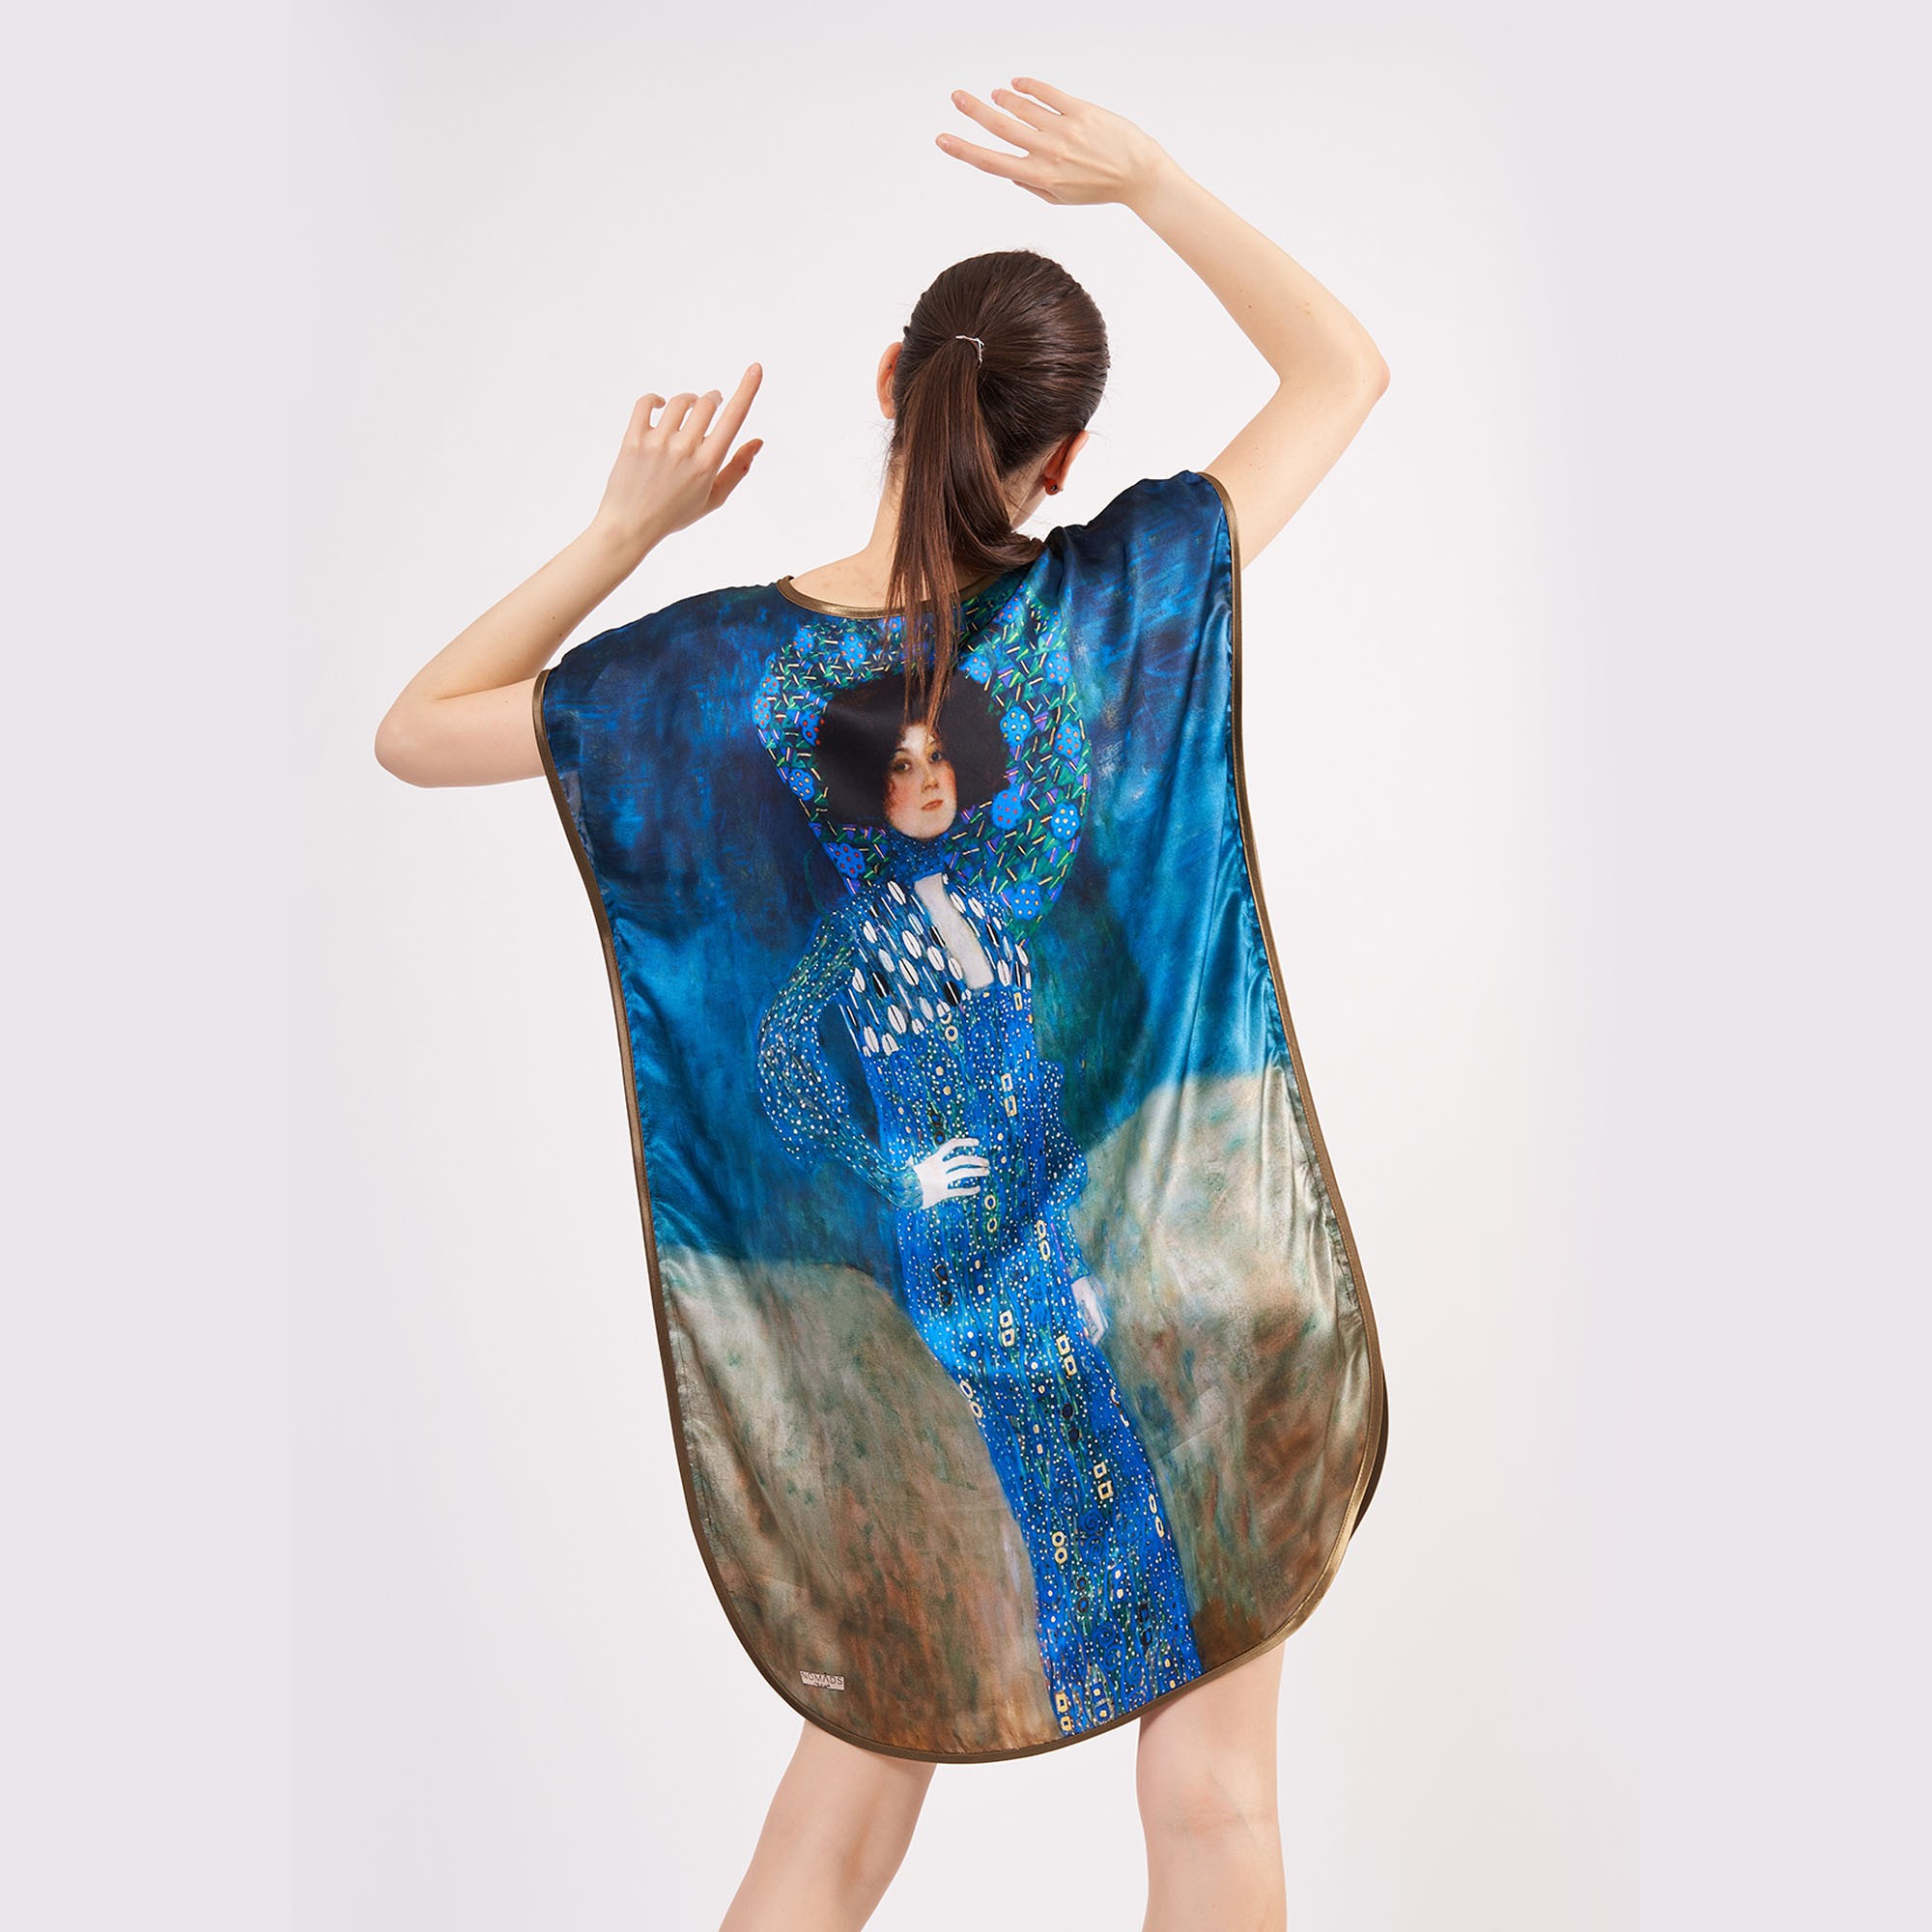 فستان حرير قصير ١٠٠٪ | Gustav Klimt Emilie Floge